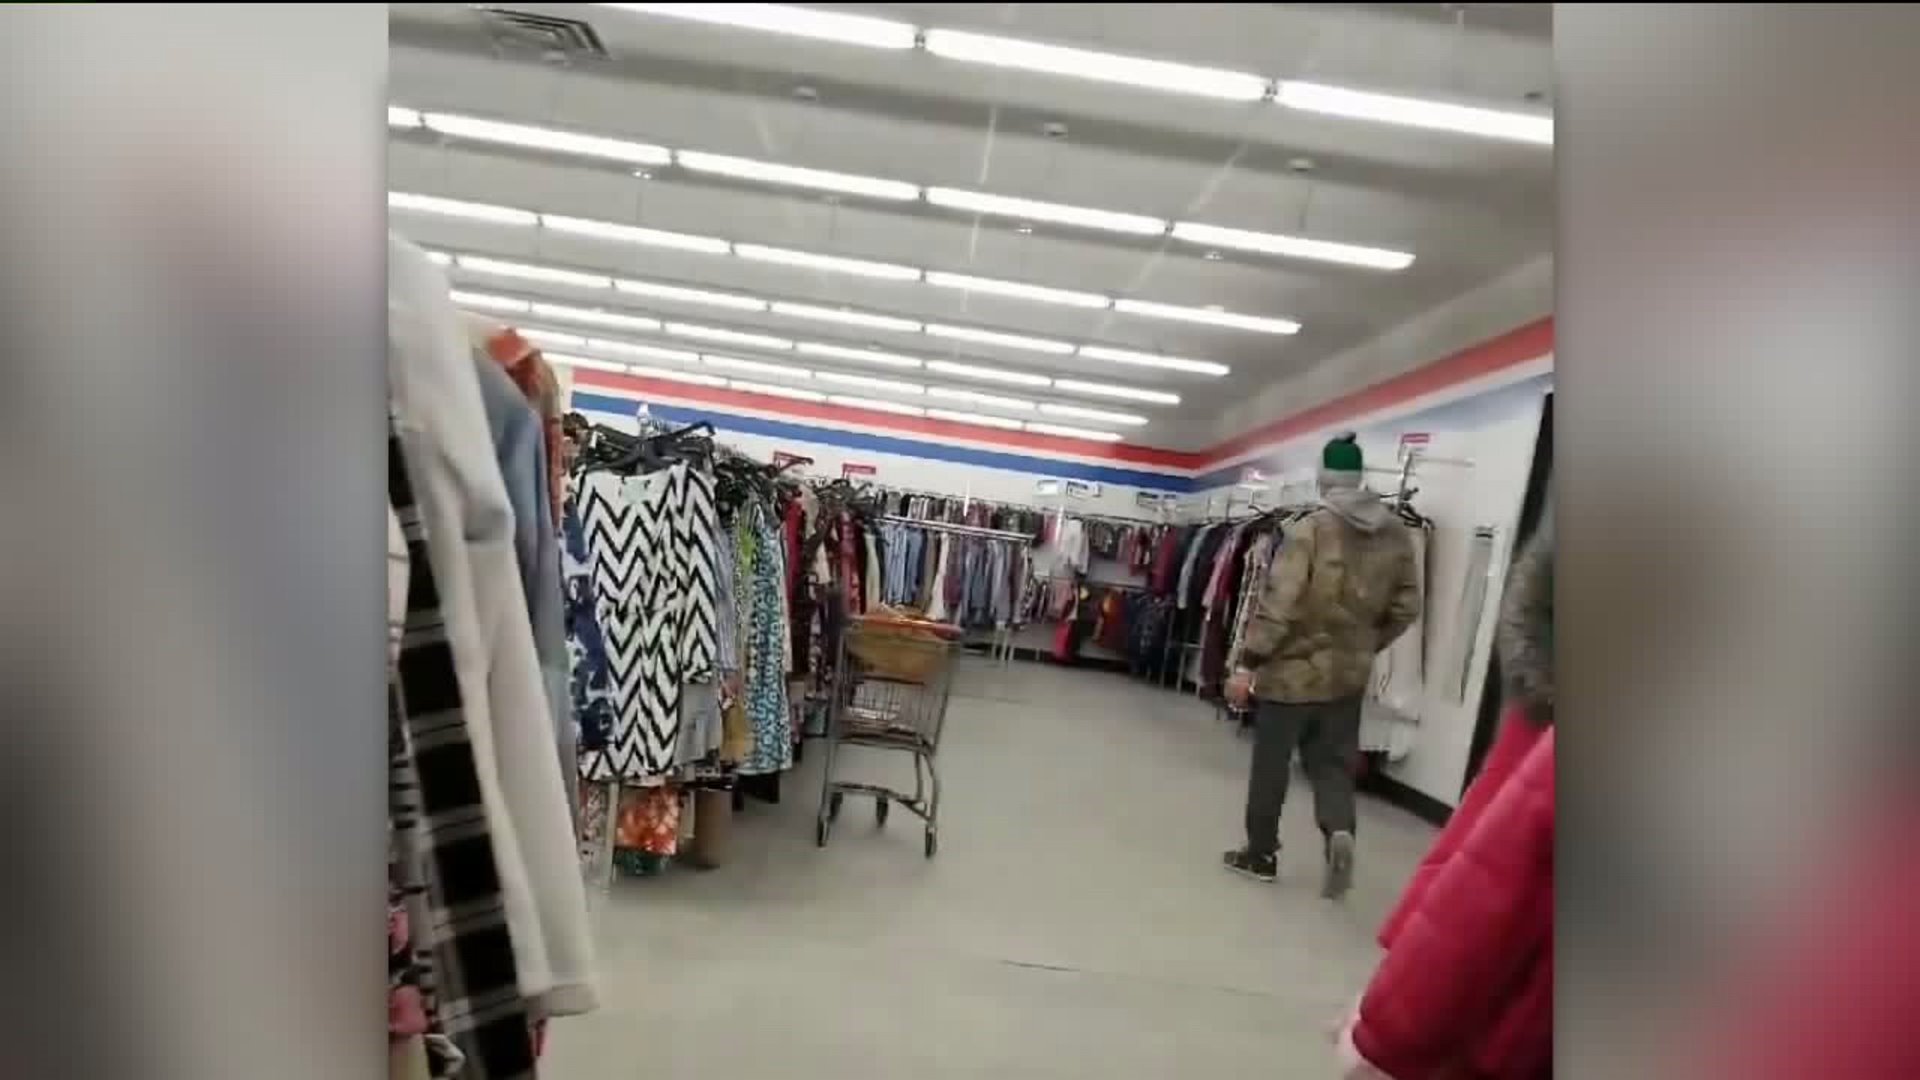 Man Accused of Peeping on Women in Dressing Room